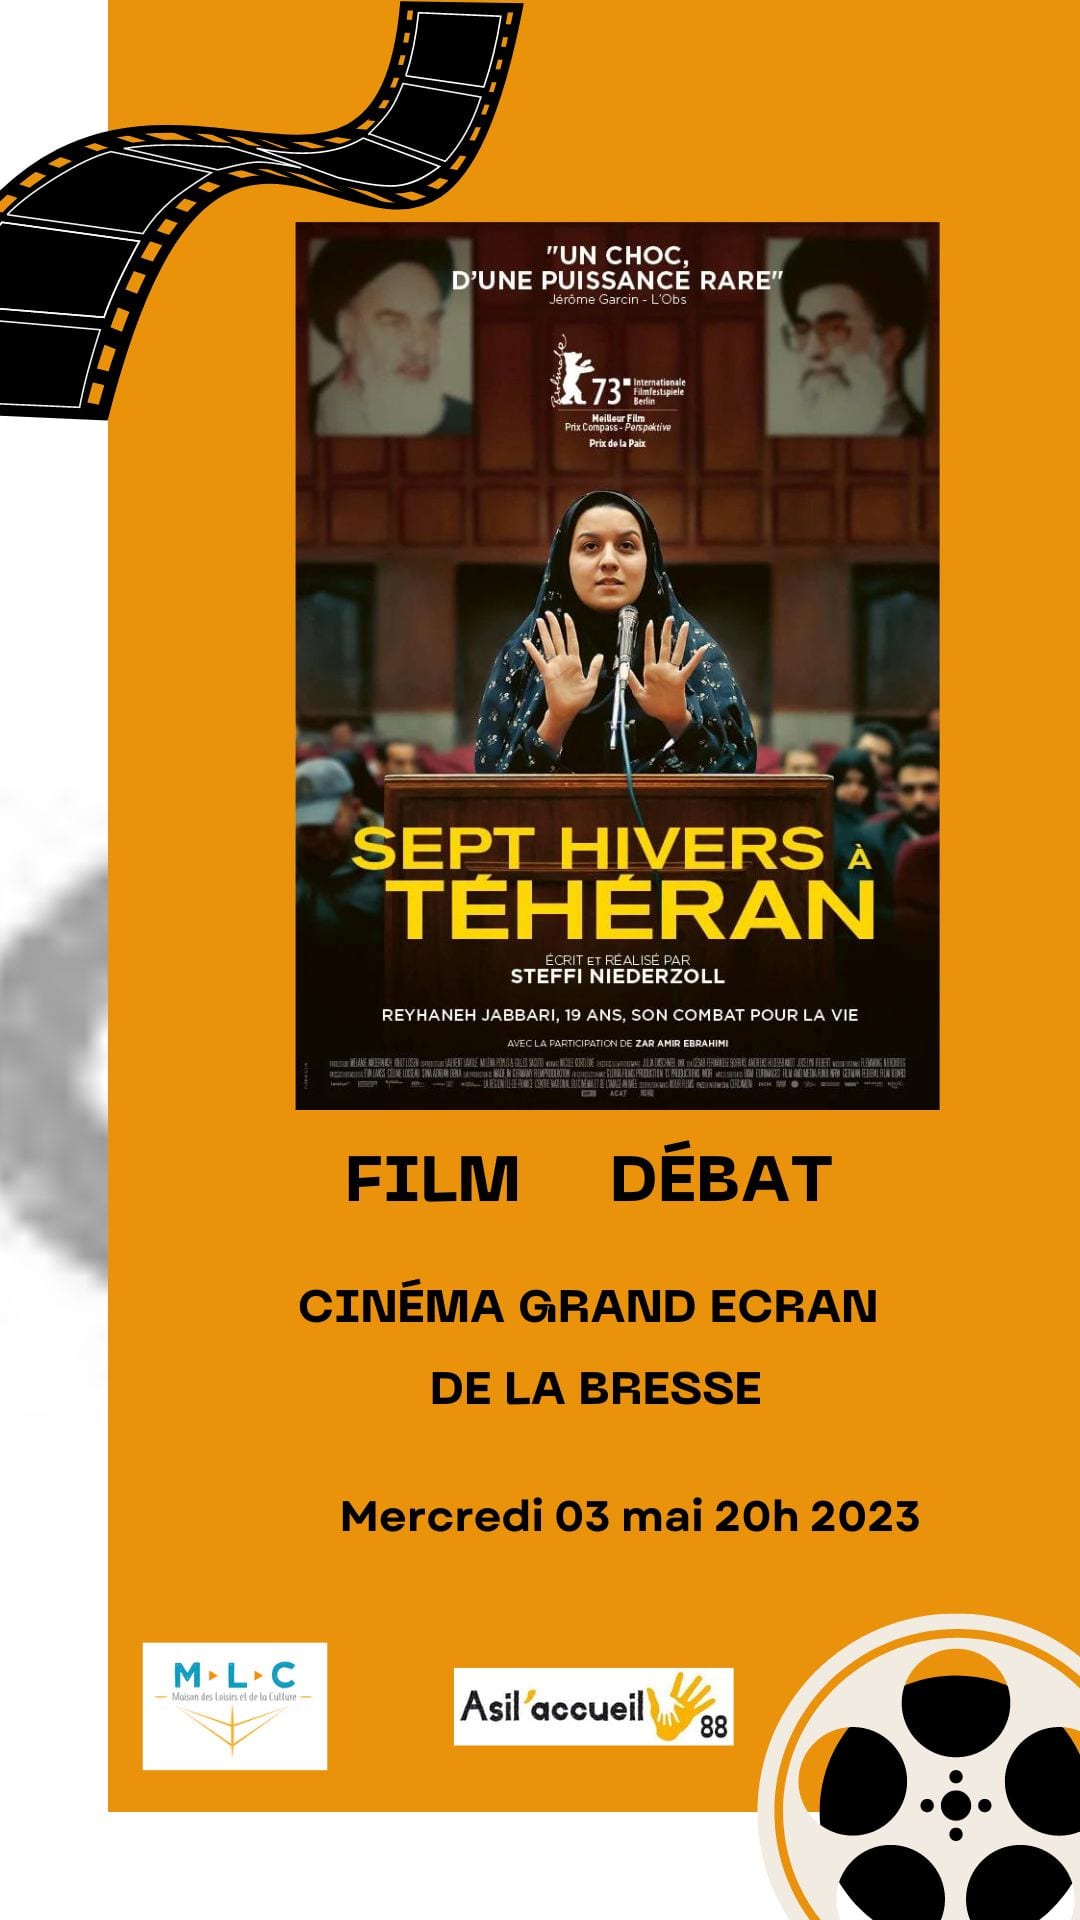 Ciné débat au Cinéma Grand Ecran de La Bresse